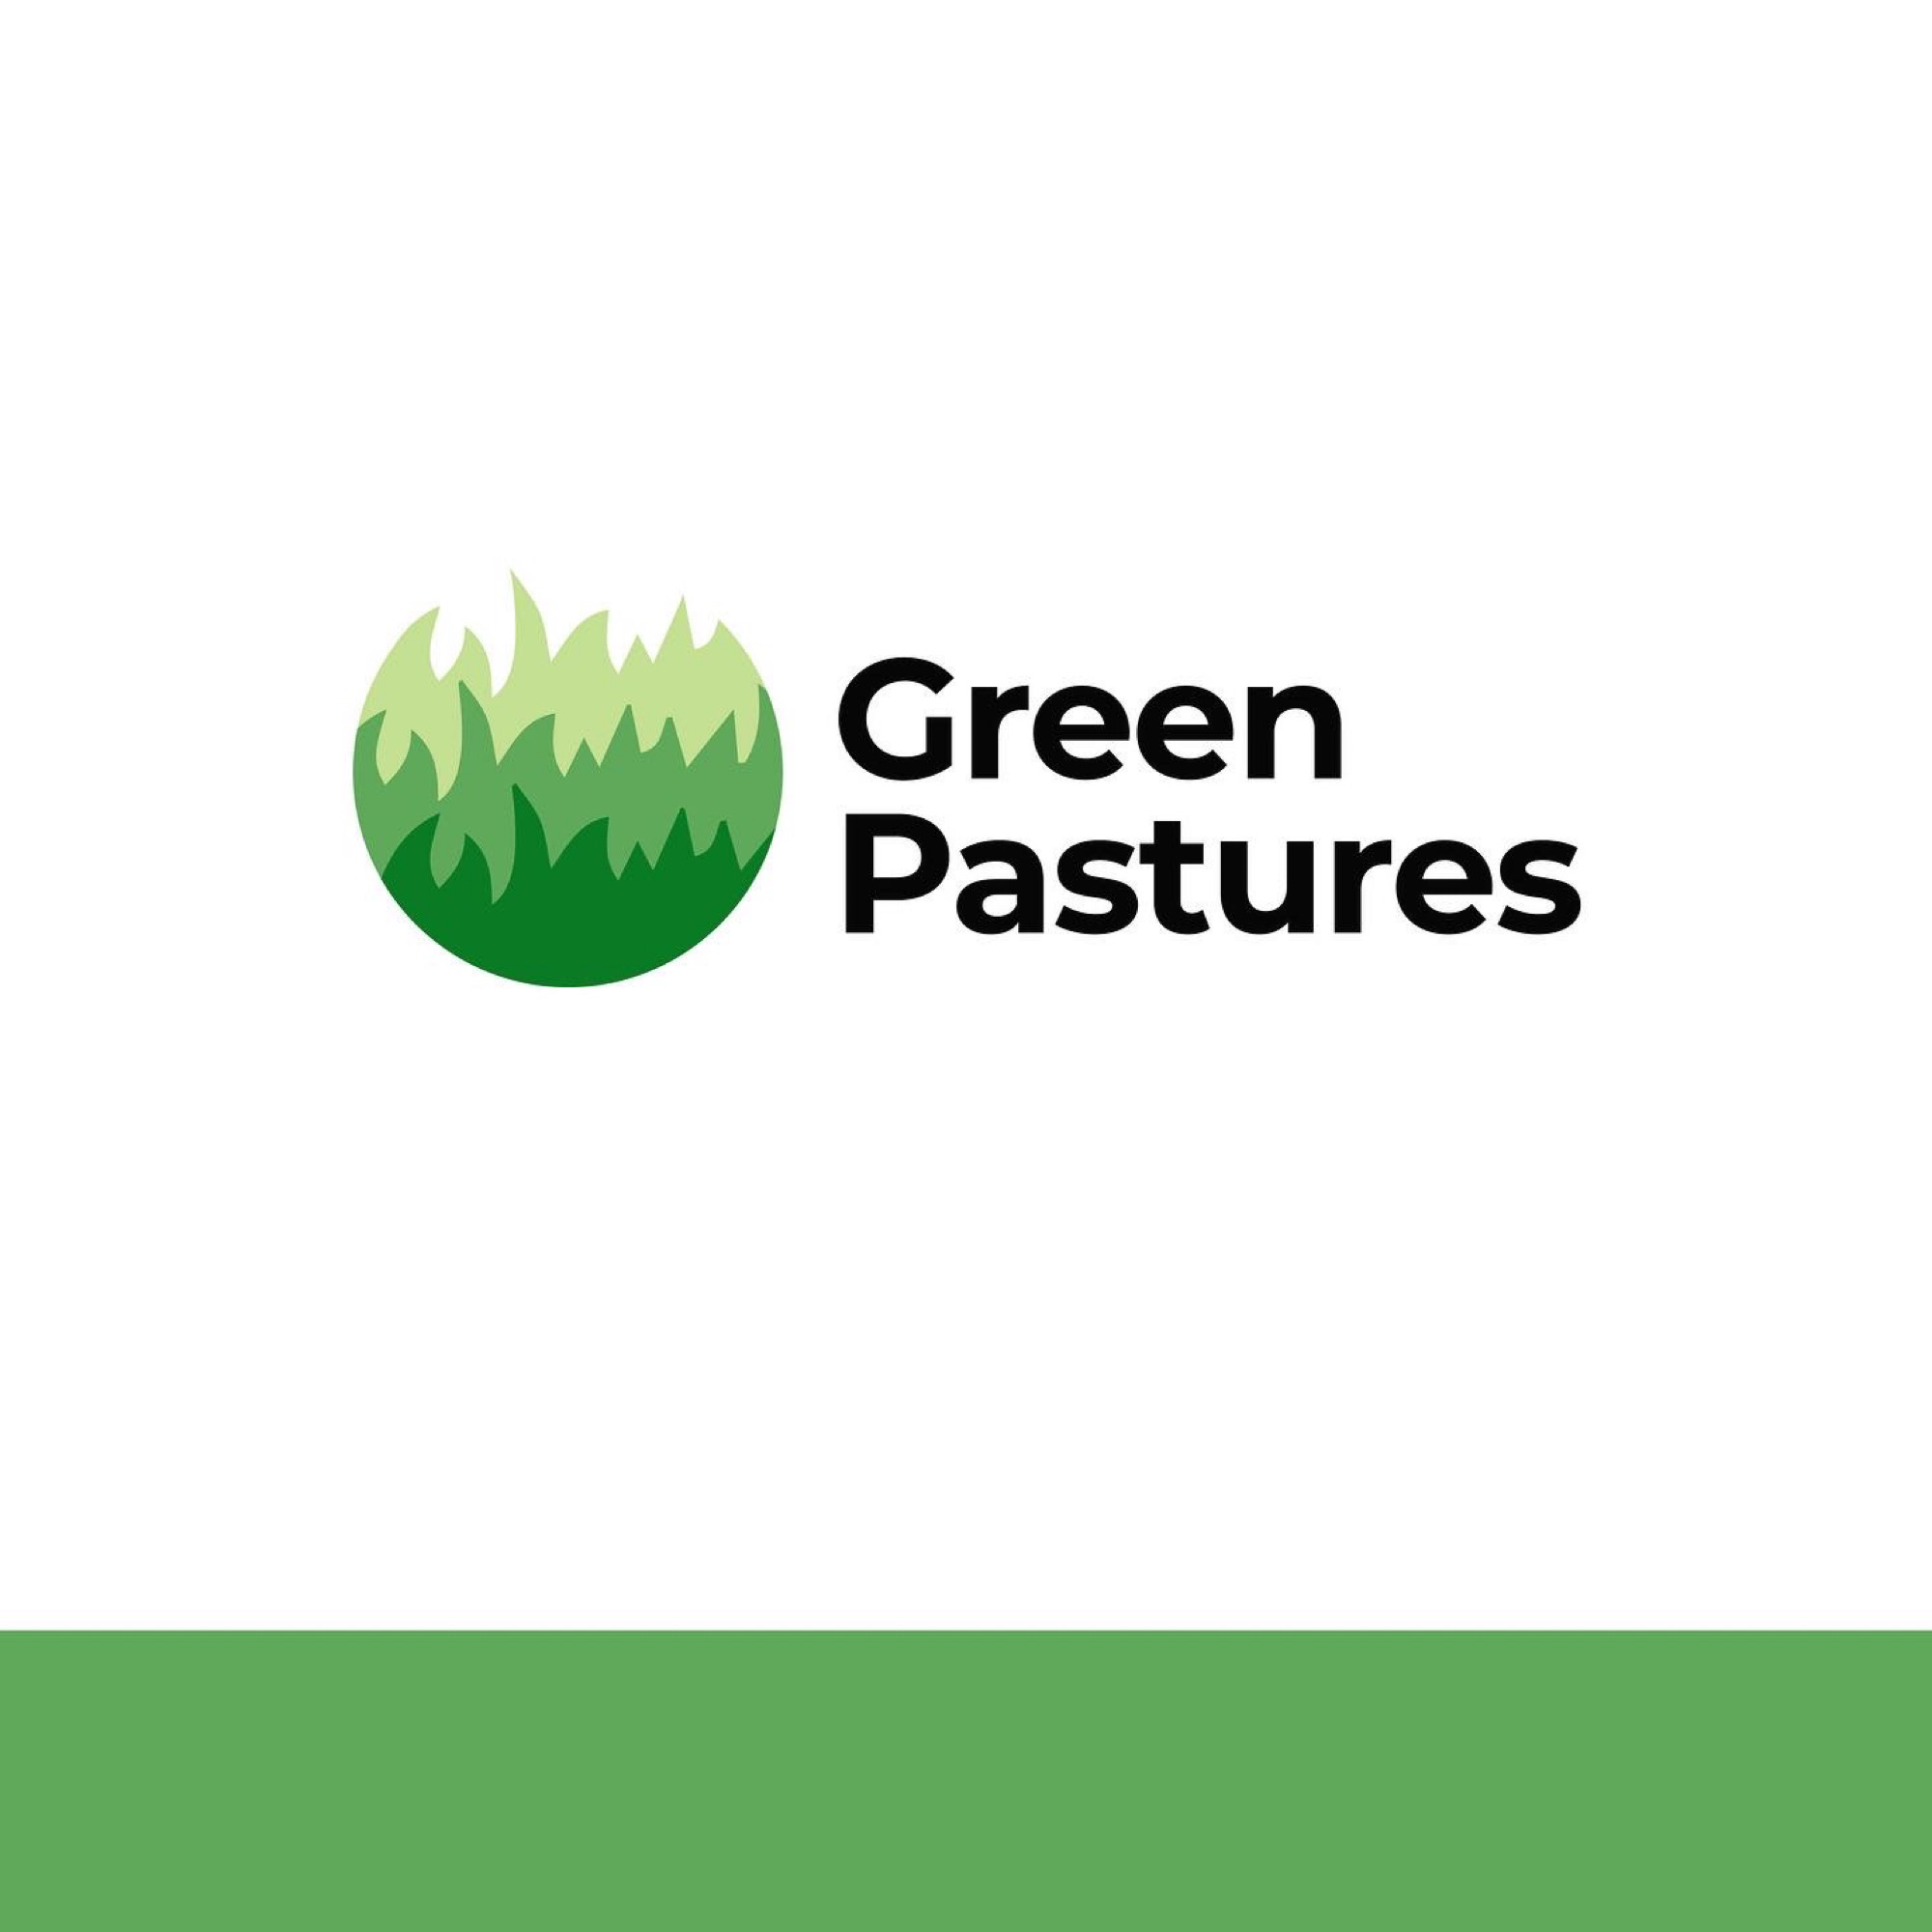 Green Pastures-Unlicensed Contractor Logo